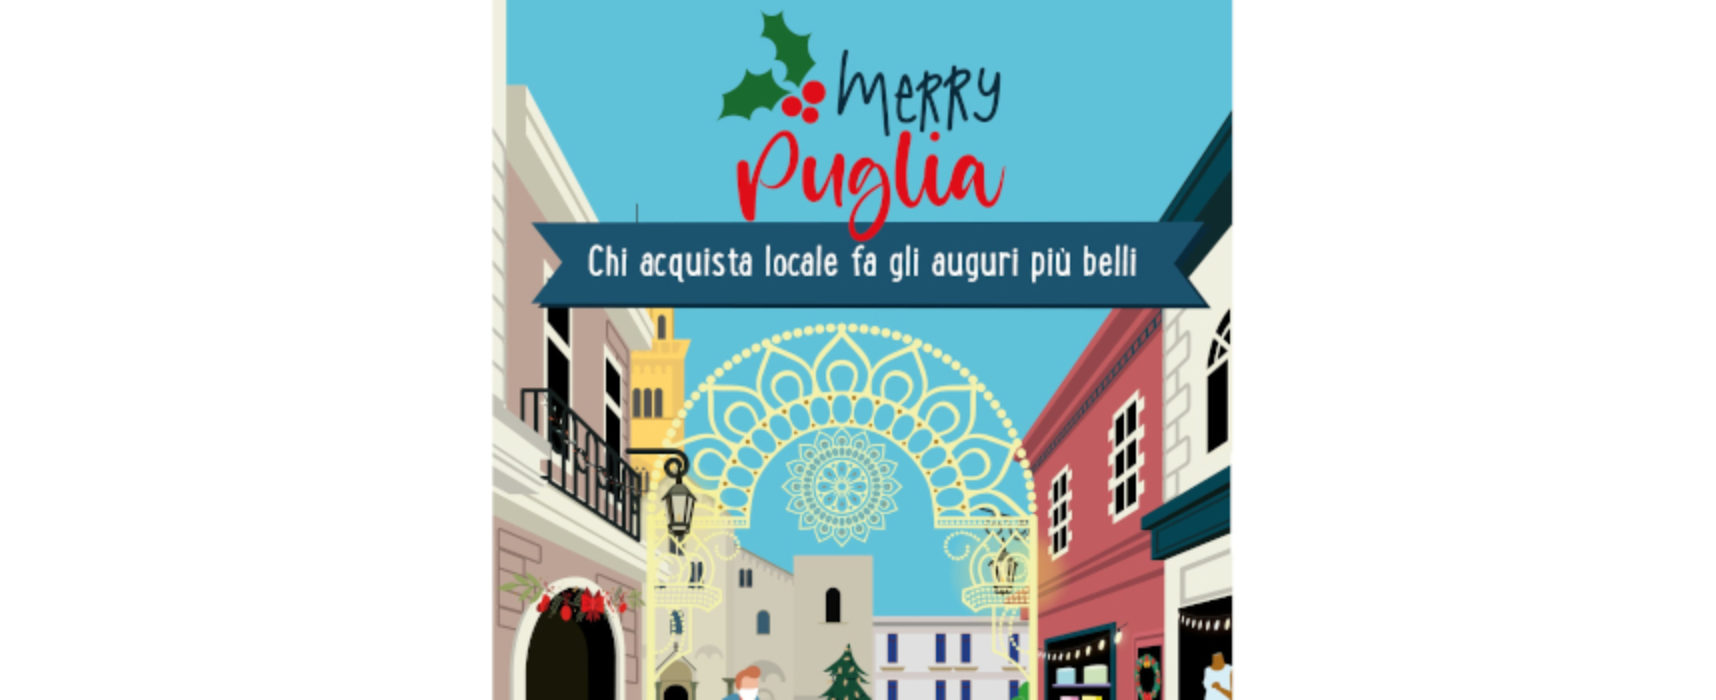 Merry Puglia, la campagna della Regione per incentivare acquisti “locali”